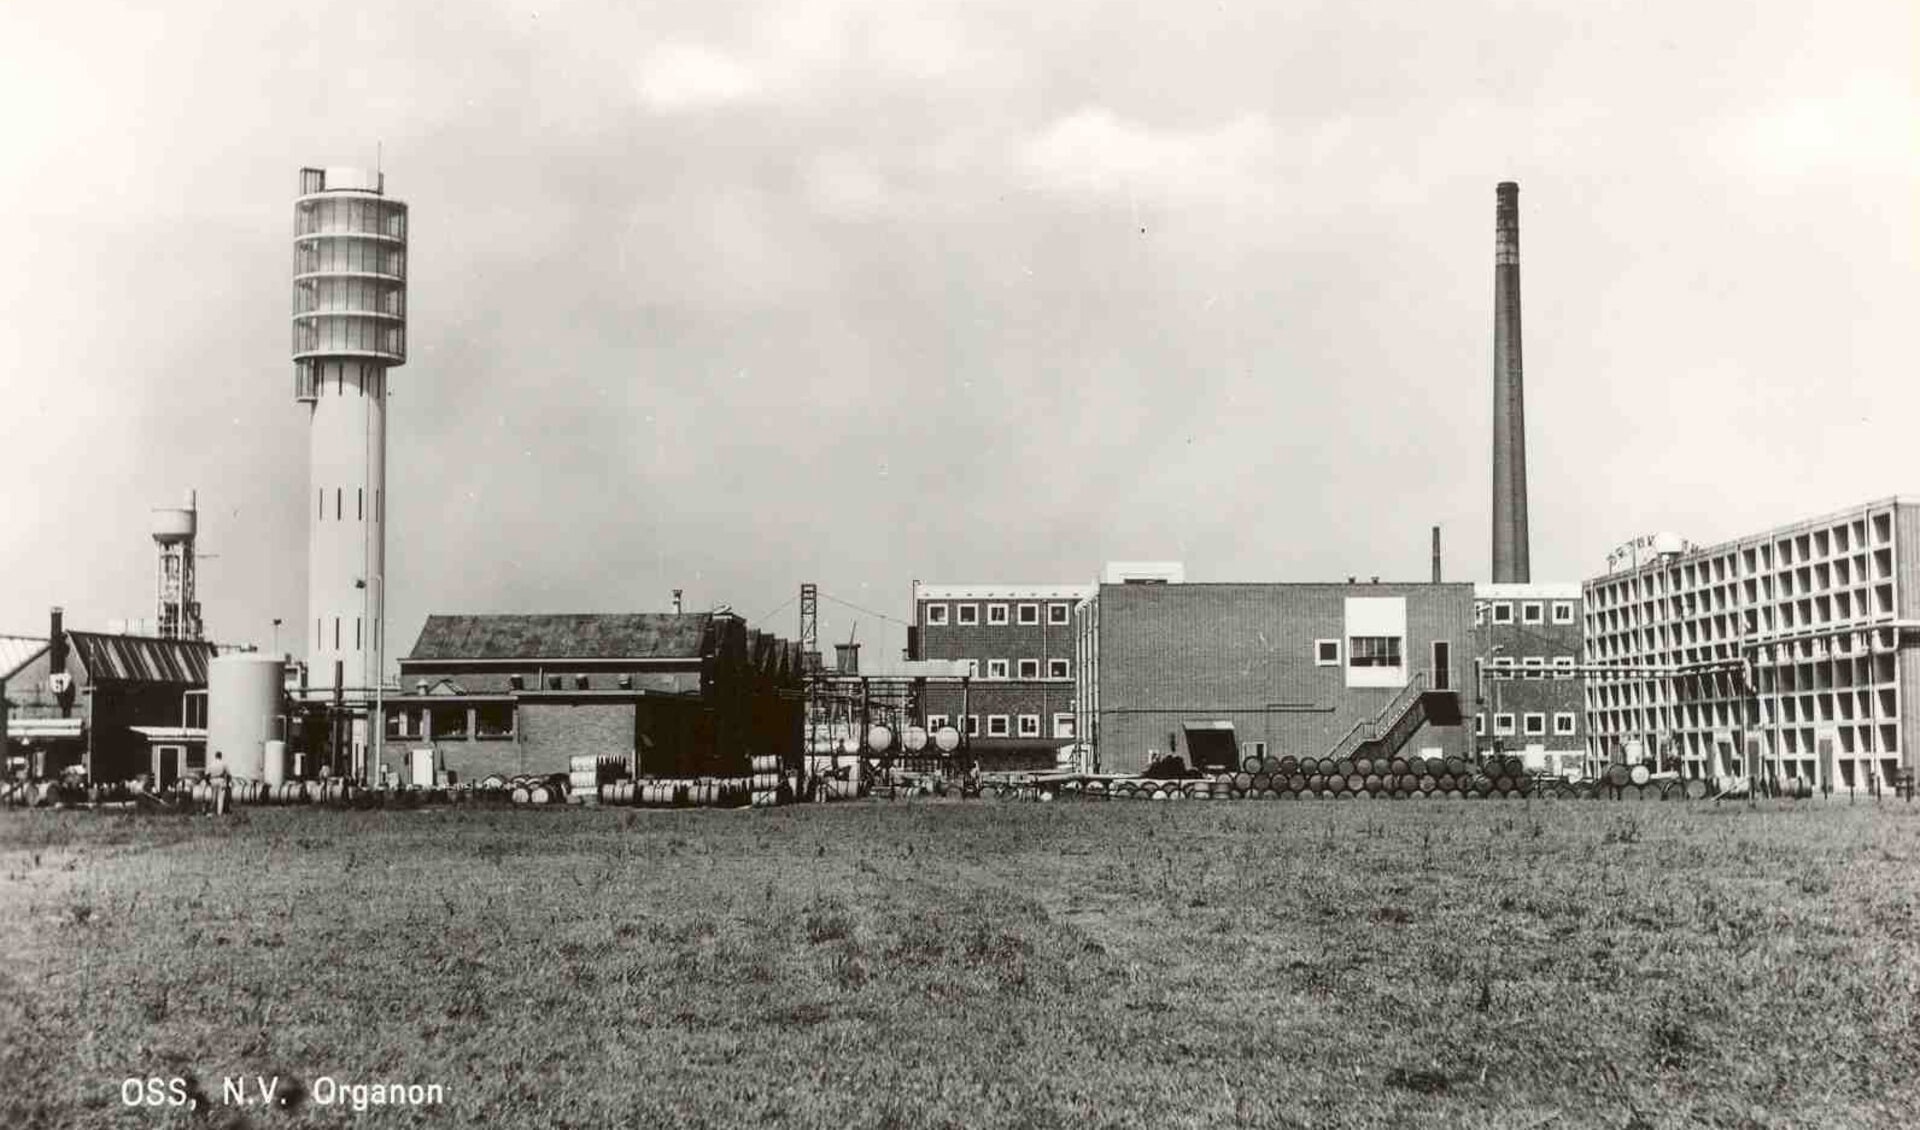 De watertoren en installaties bij Organon in 1959. (Foto M. Ceulemans, collectie Stadsarchief Oss)